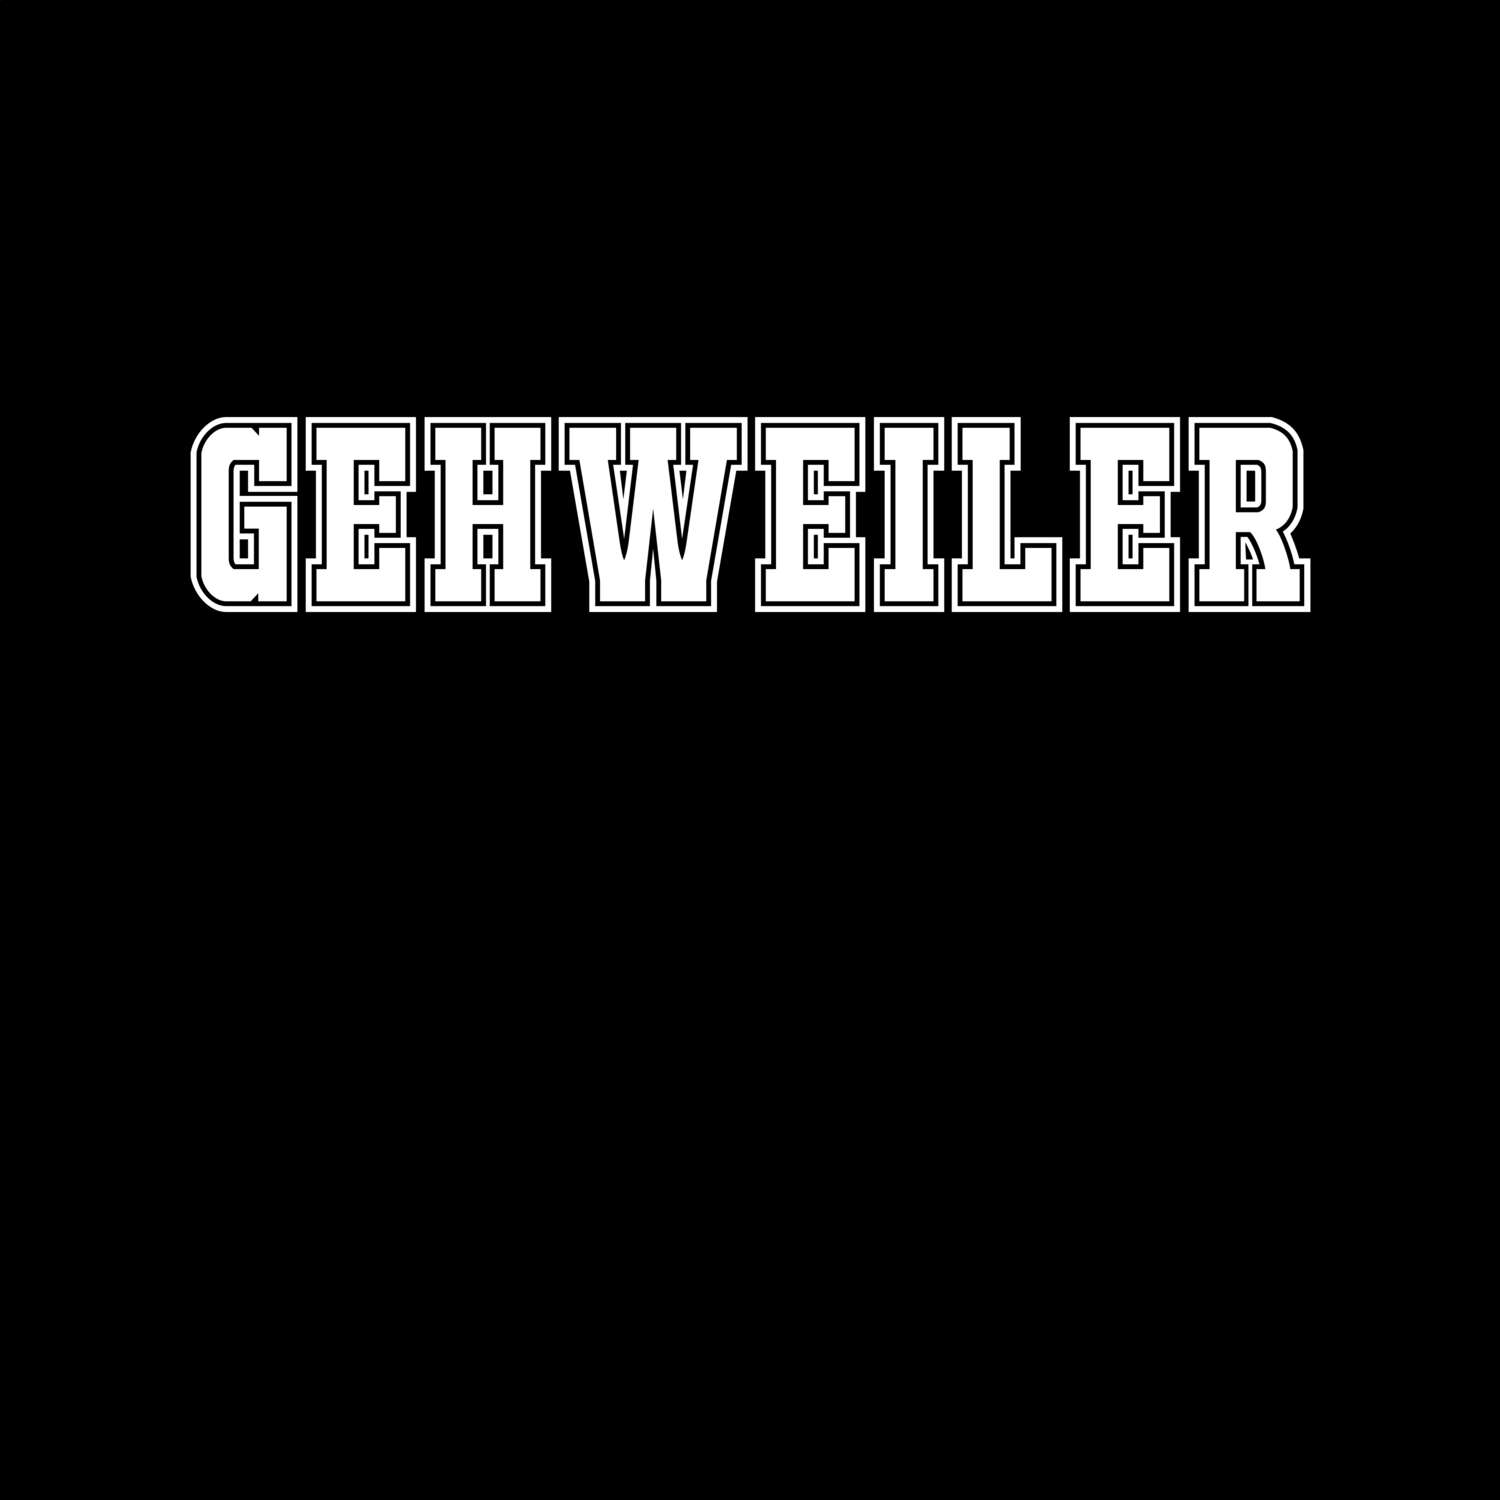 Gehweiler T-Shirt »Classic«